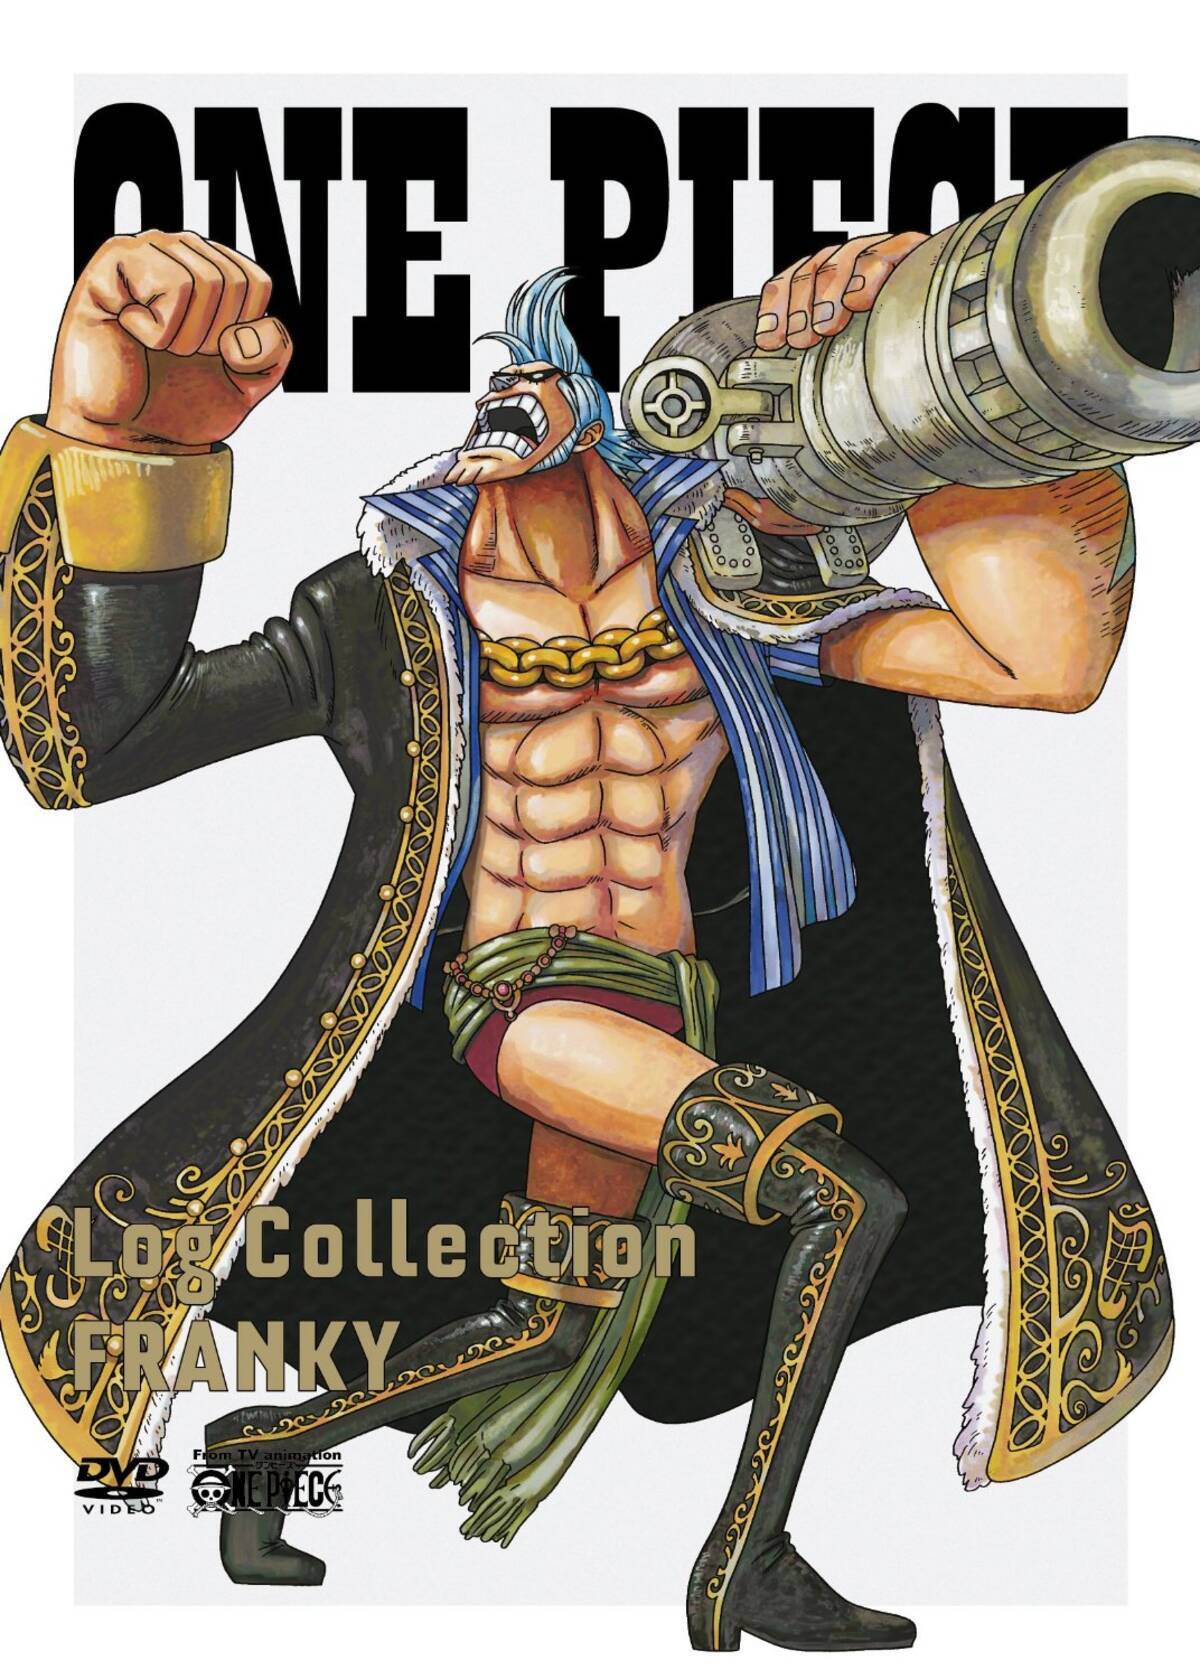 アニメキャラの魅力 変態と呼ばれたい 改造マニアな頼れる船大工 フランキー の魅力とは One Piece 15年2月4日 エキサイトニュース